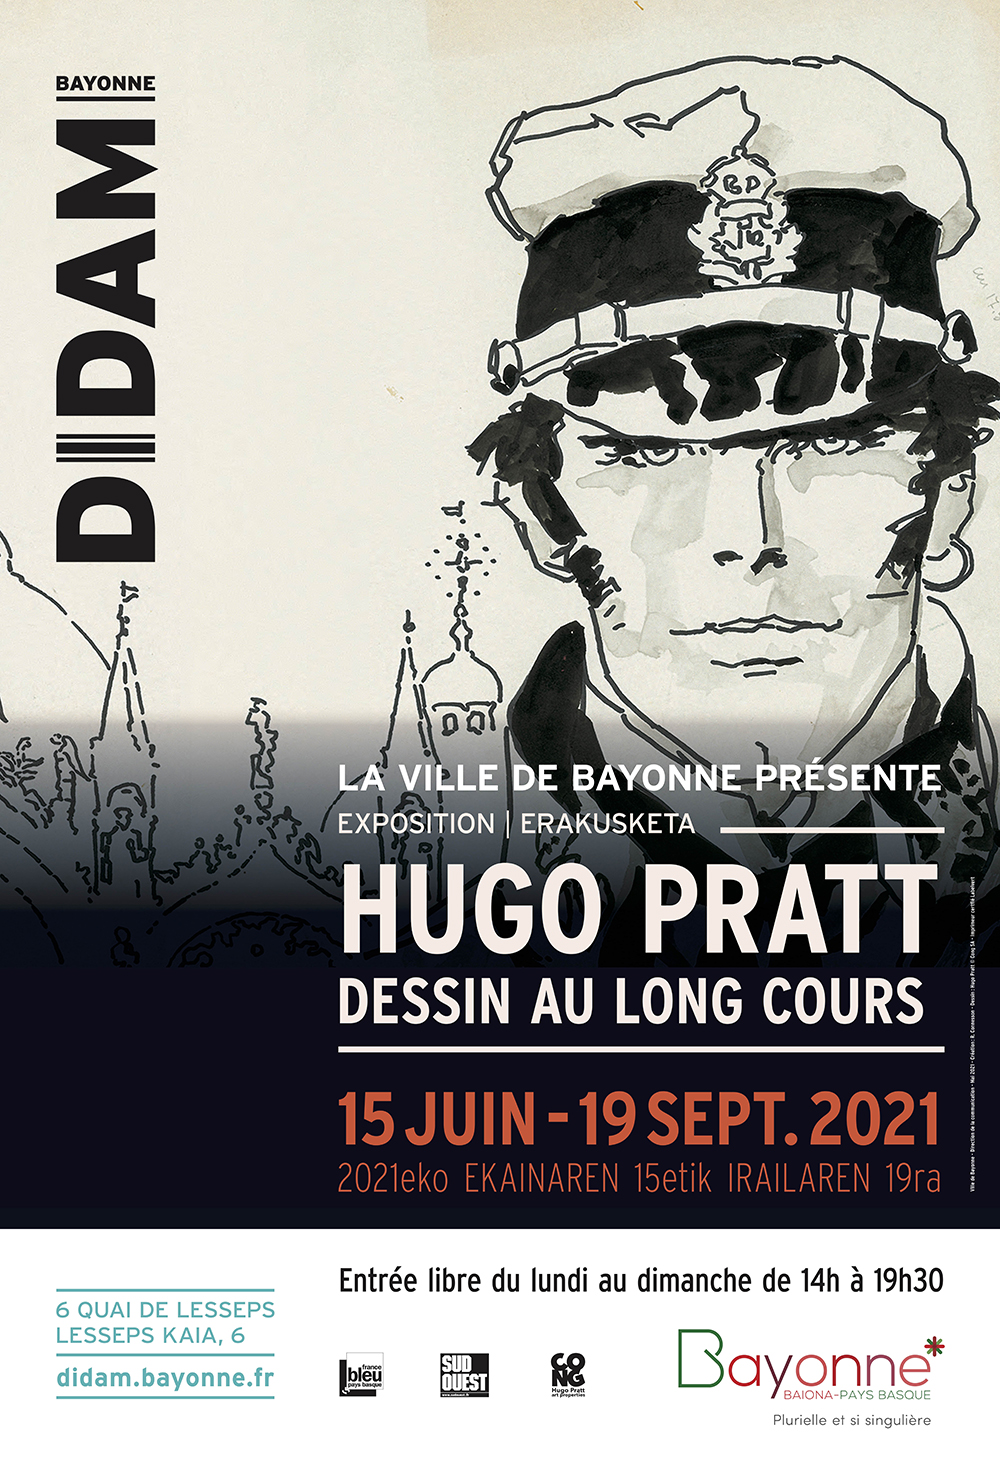 Hugo Pratt Bayonne